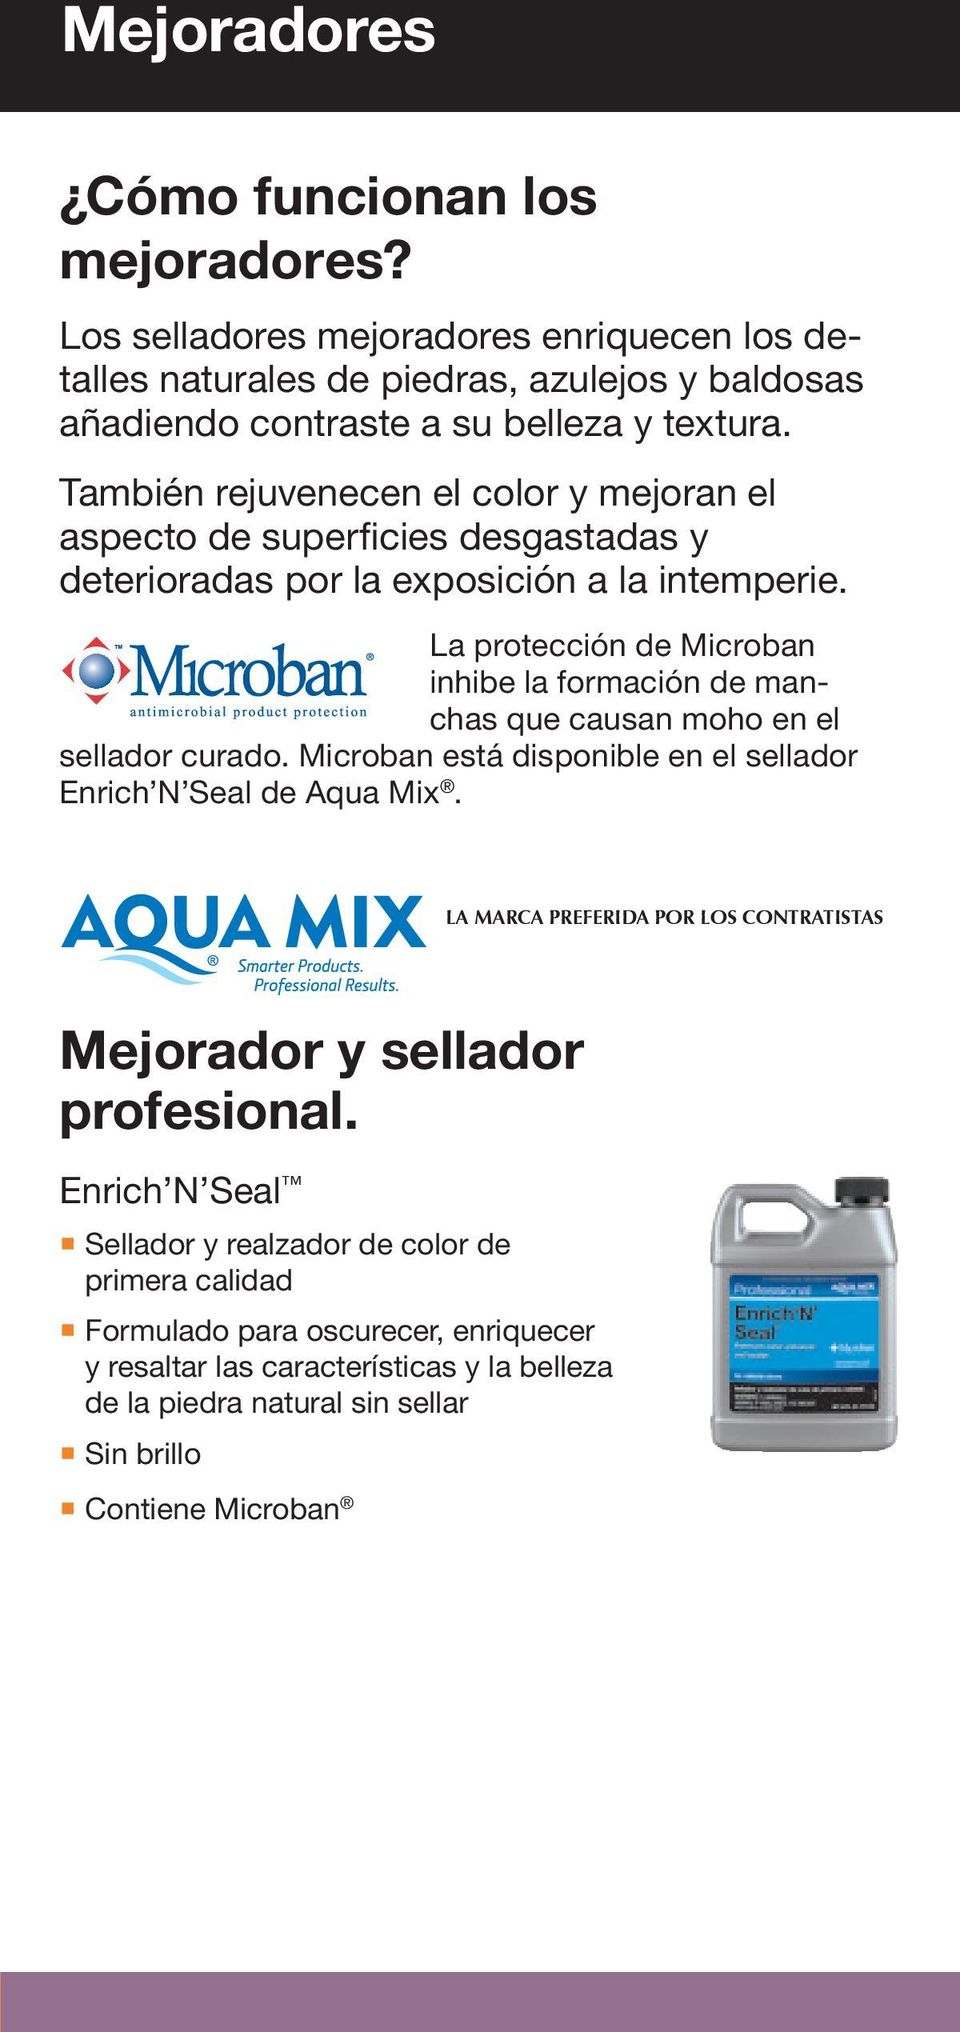 La protección de Microban inhibe la formación de manchas que causan moho en el sellador curado. Microban está disponible en el sellador Enrich N Seal de Aqua Mix.